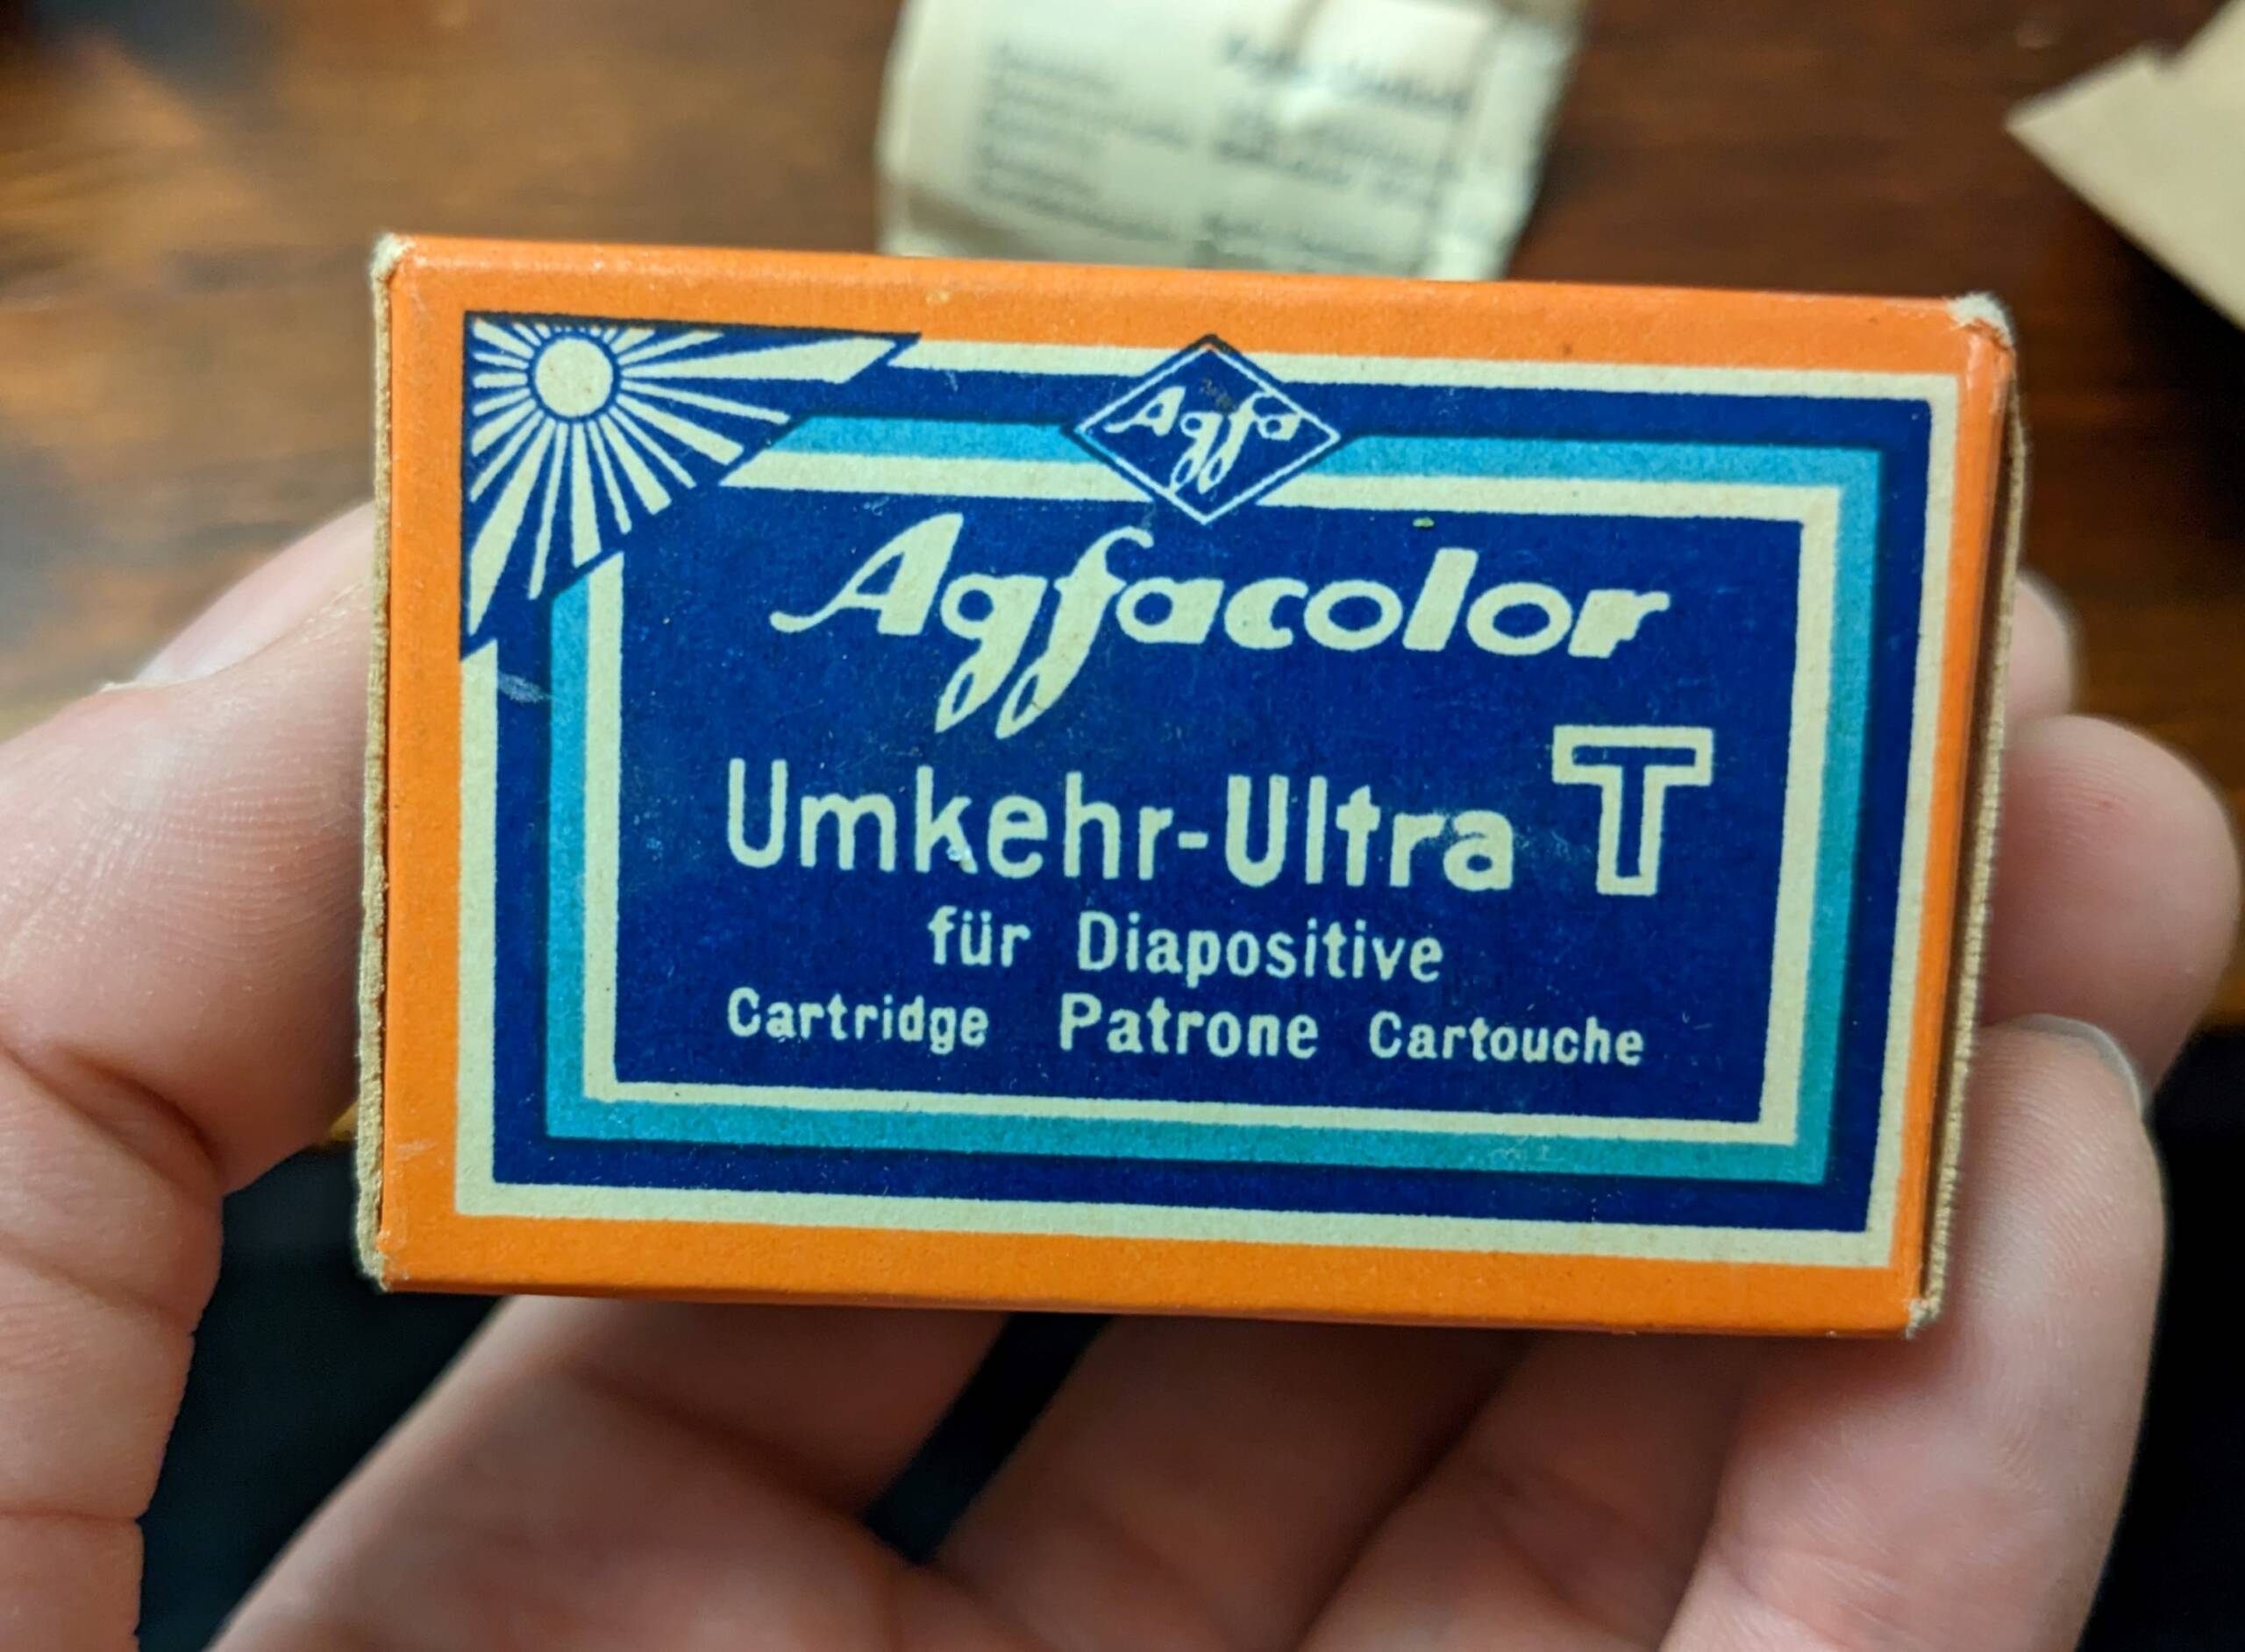 Vintage Agfacolor Umkehr Ultra T (1960) developed to color